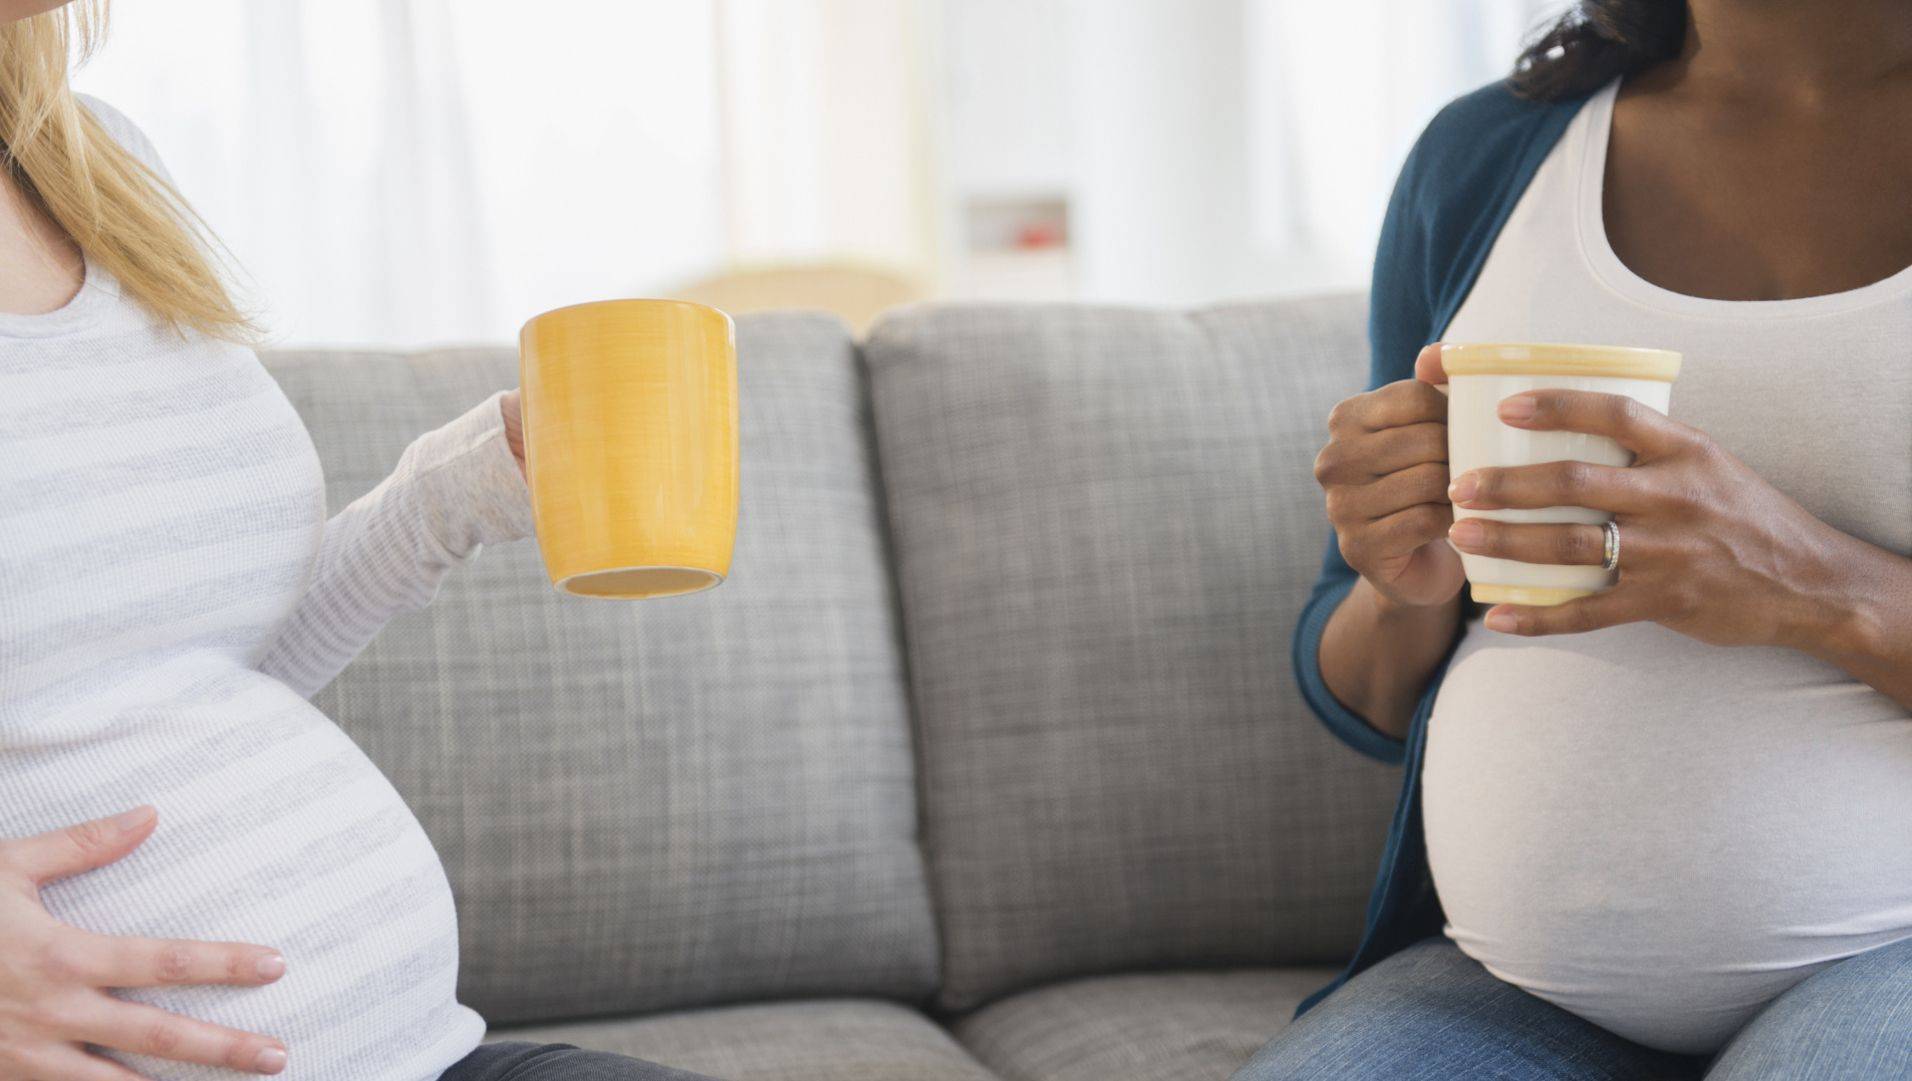 Польза и вред зеленого чая для женщин и мужчин. можно ли зеленый чай при беременности, кормлении грудью, детям, при давлении?